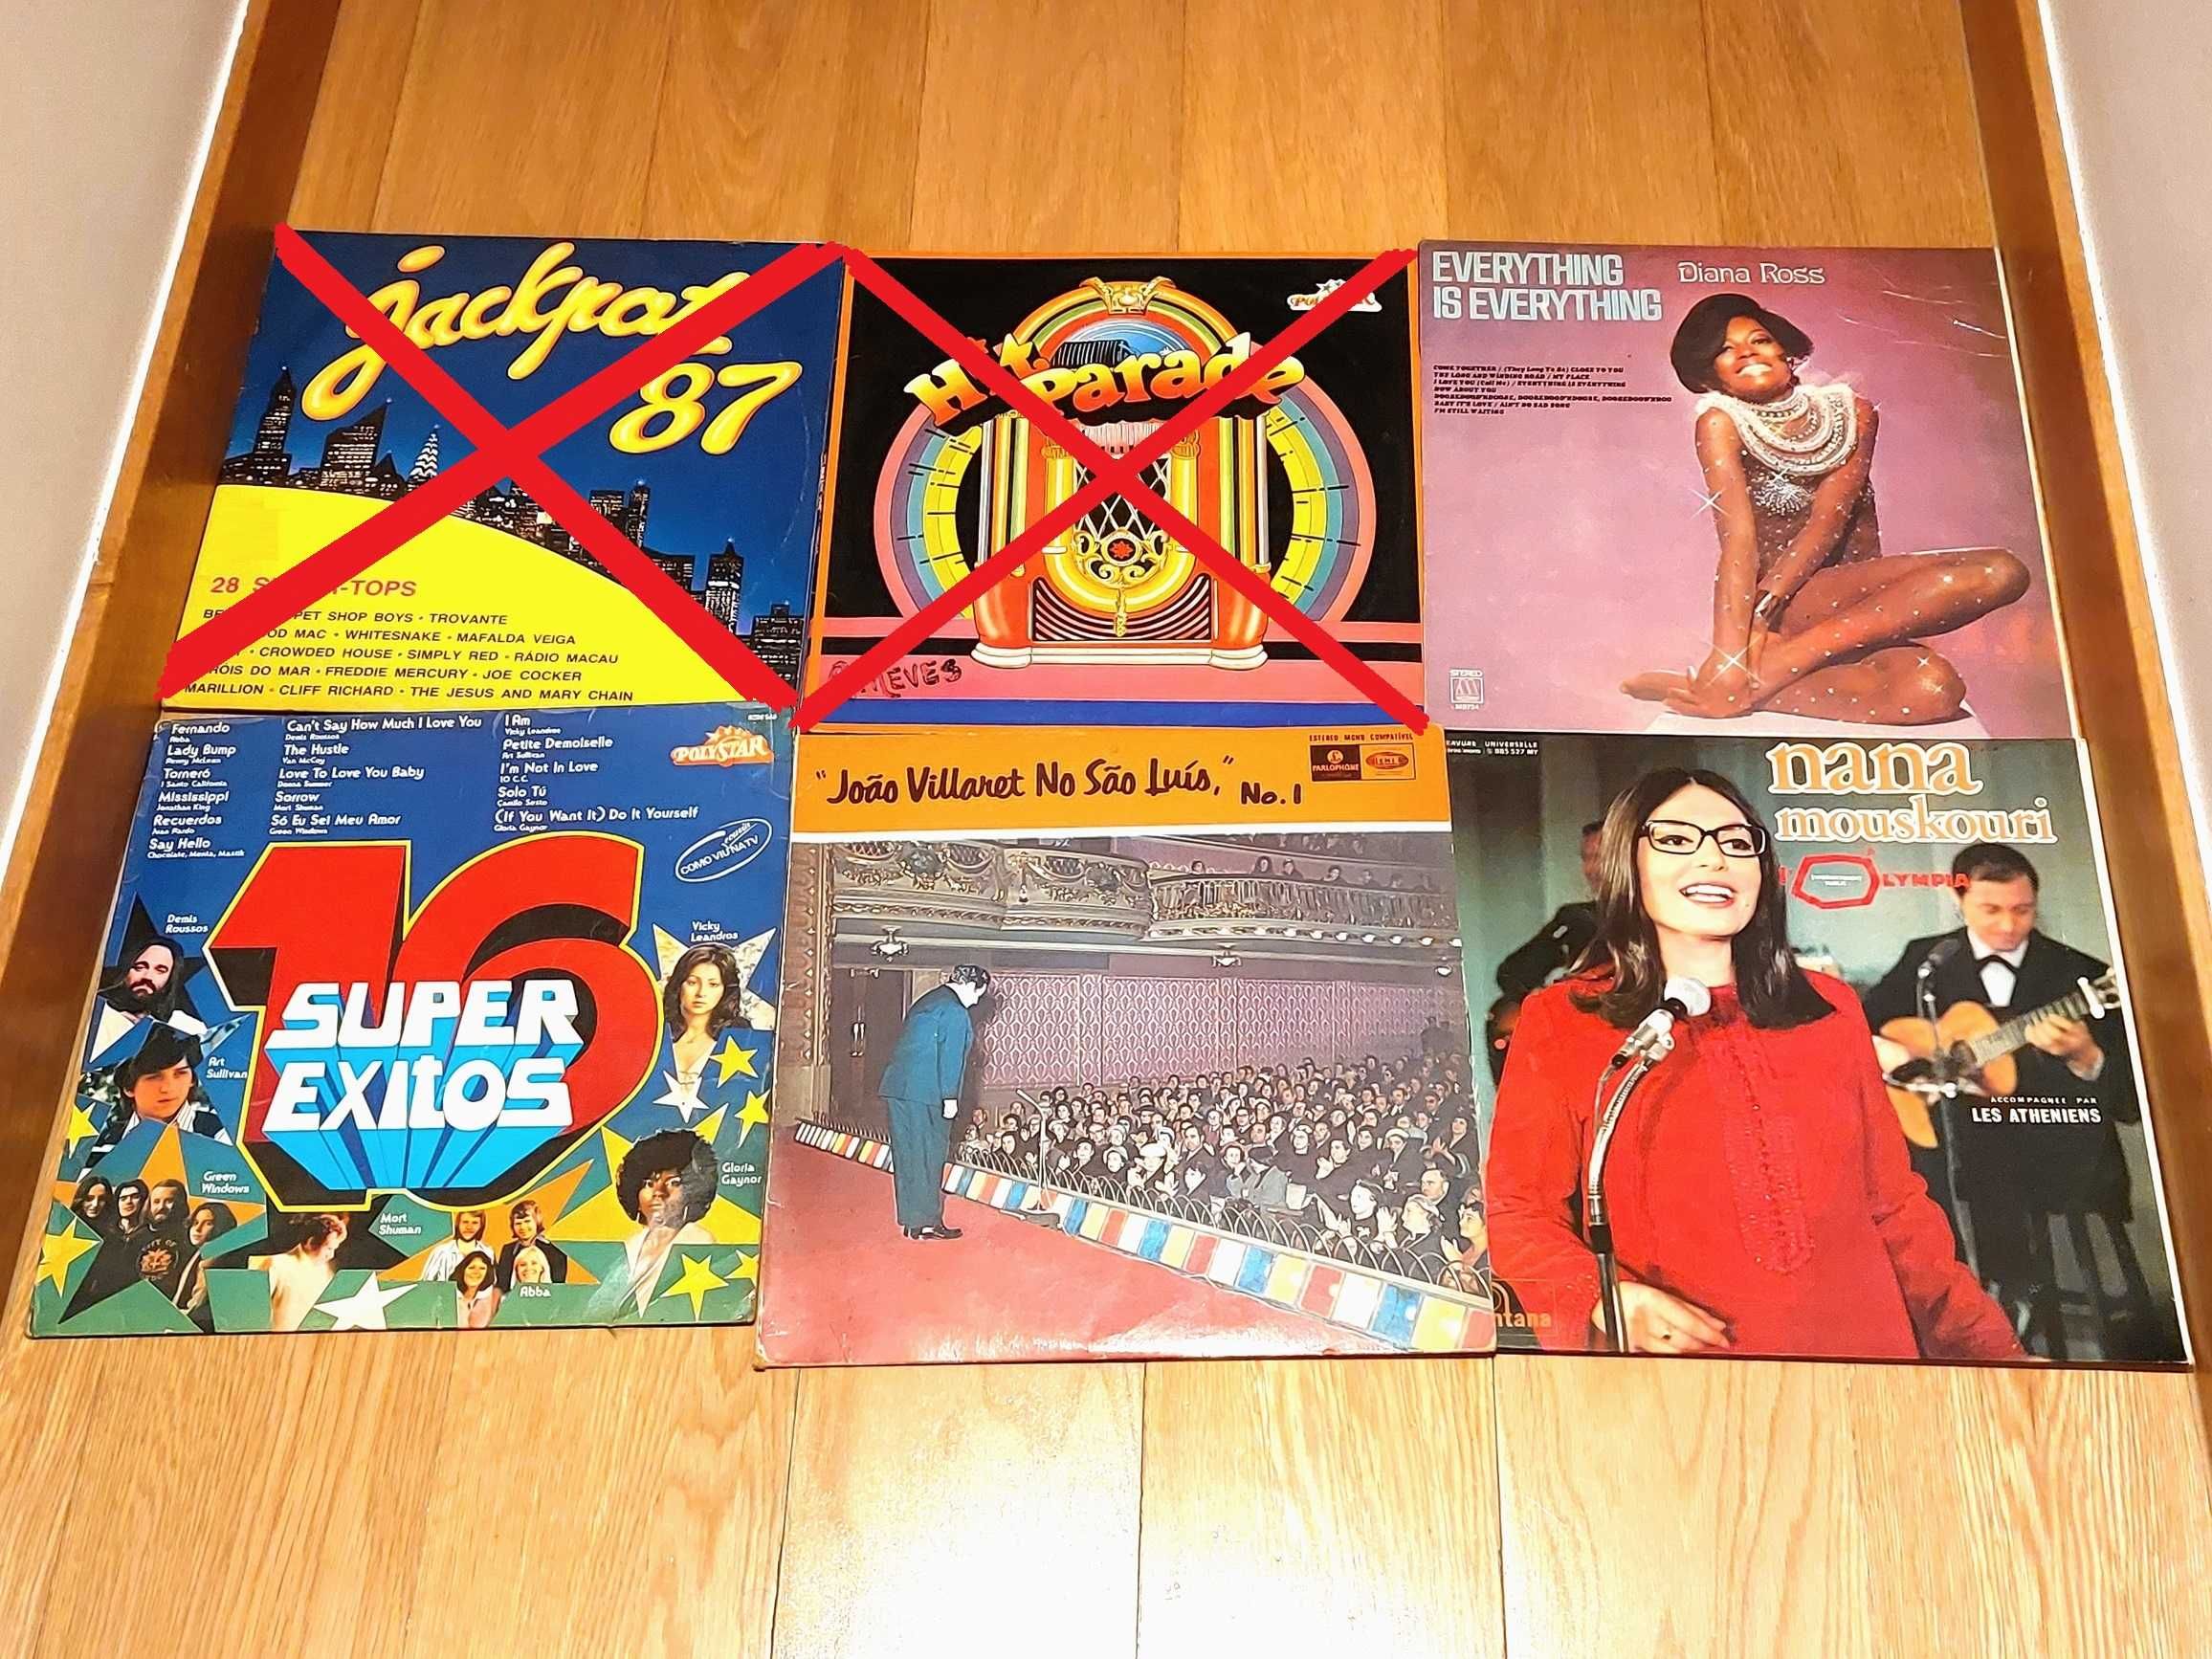 Discos Vinil - LPs vários anos 60-70-80 (desde 8€)